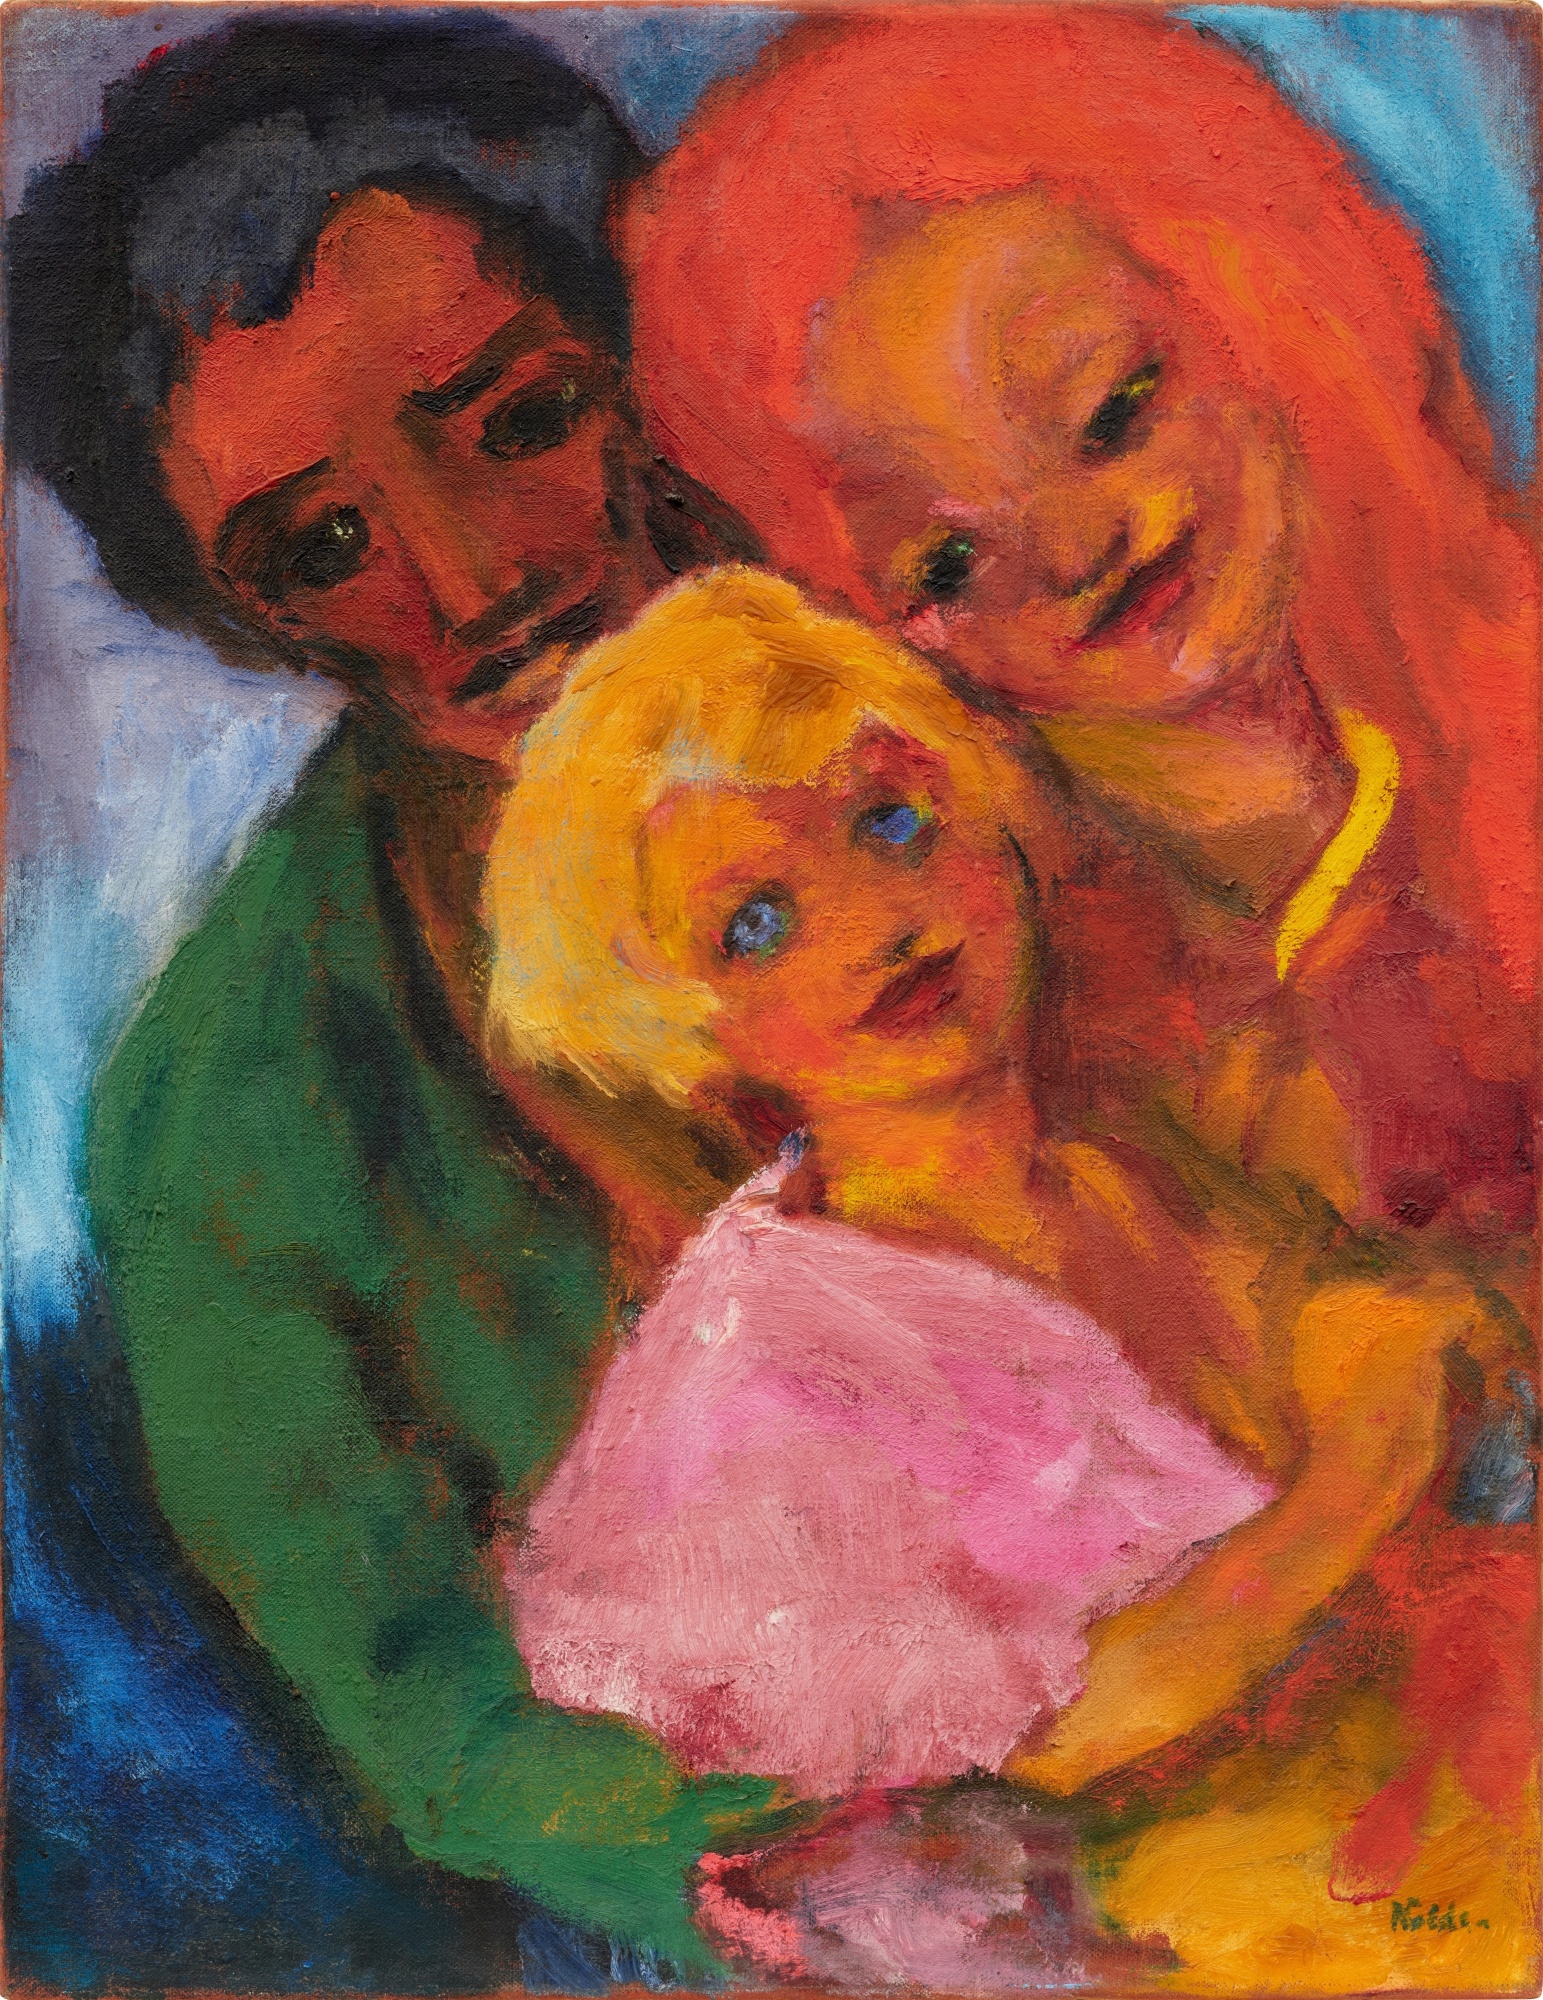 Glückliche Familie by Emil Nolde, 1947